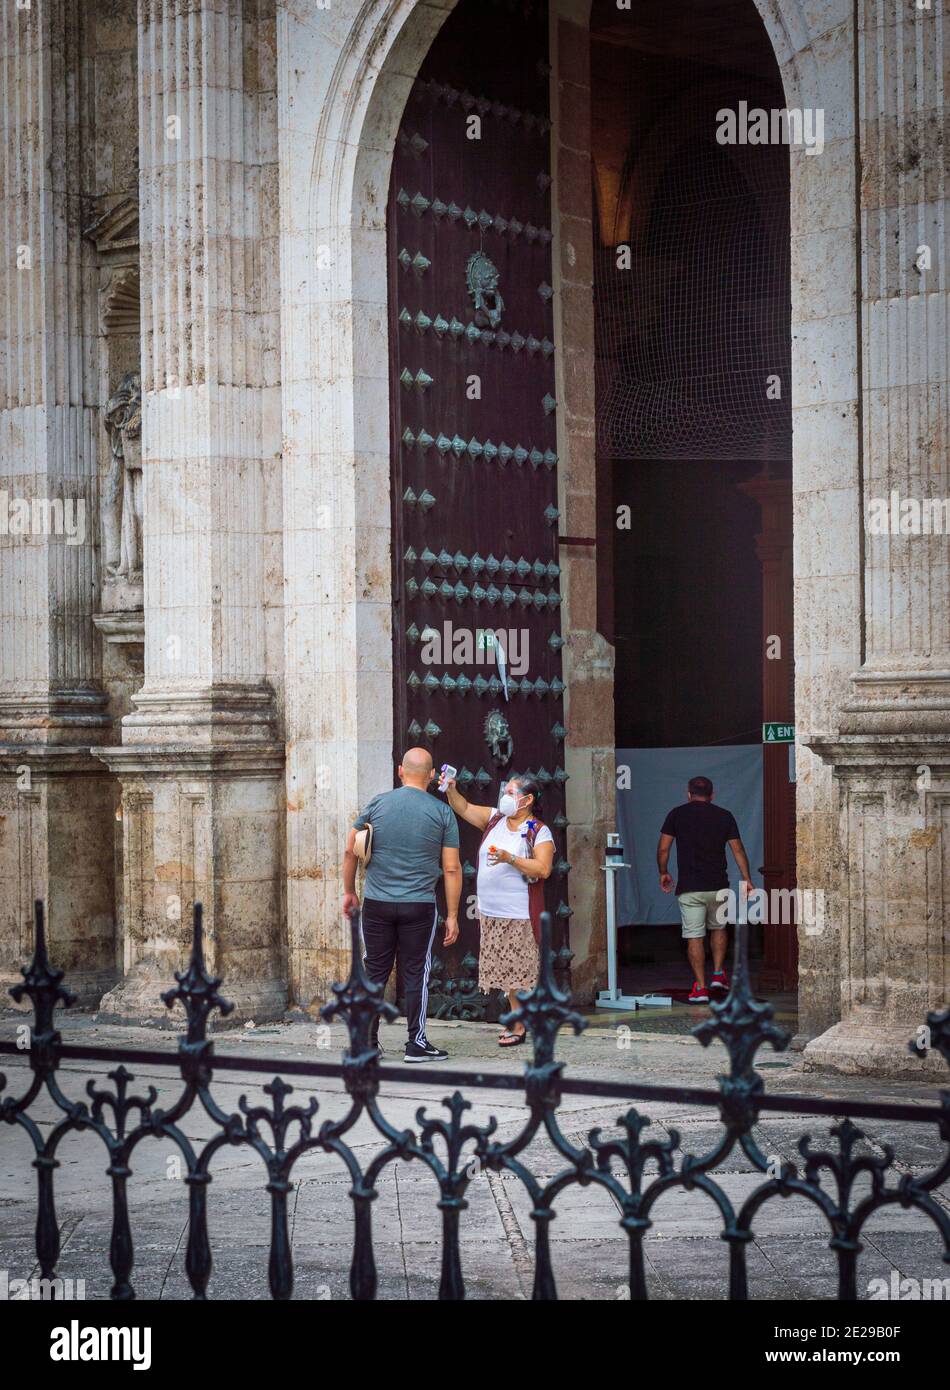 Nuevo México normal, entrada de la Catedral en Mérida, Yucatán. Gel desinfectante y tamizaje de temperatura durante la pandemia de Covid. Foto de stock